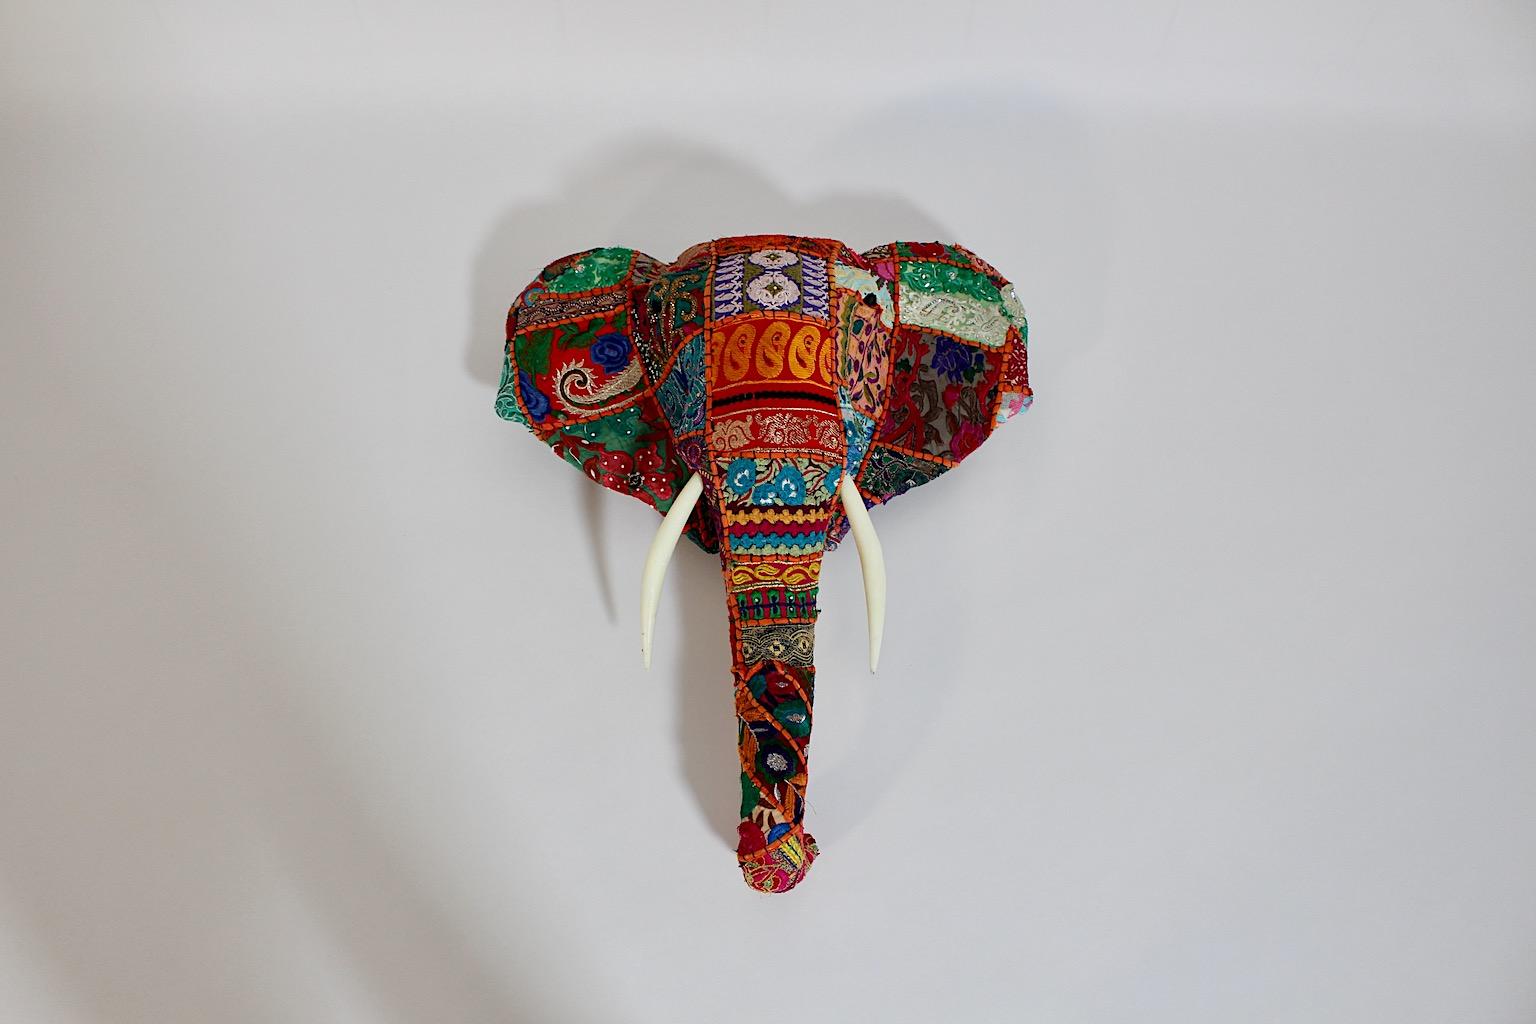 Animal Vintage Folk Art Hand gemacht Stoff Stickerei Wand montiert Elefantenkopf aus Vintage Sari Stoff, circa 1980er Jahre Indien.
Eine erstaunliche Vintage Patchwork Elefantenkopf wie eine Trophäe aus wunderbaren Vintage Baumwollstoff in